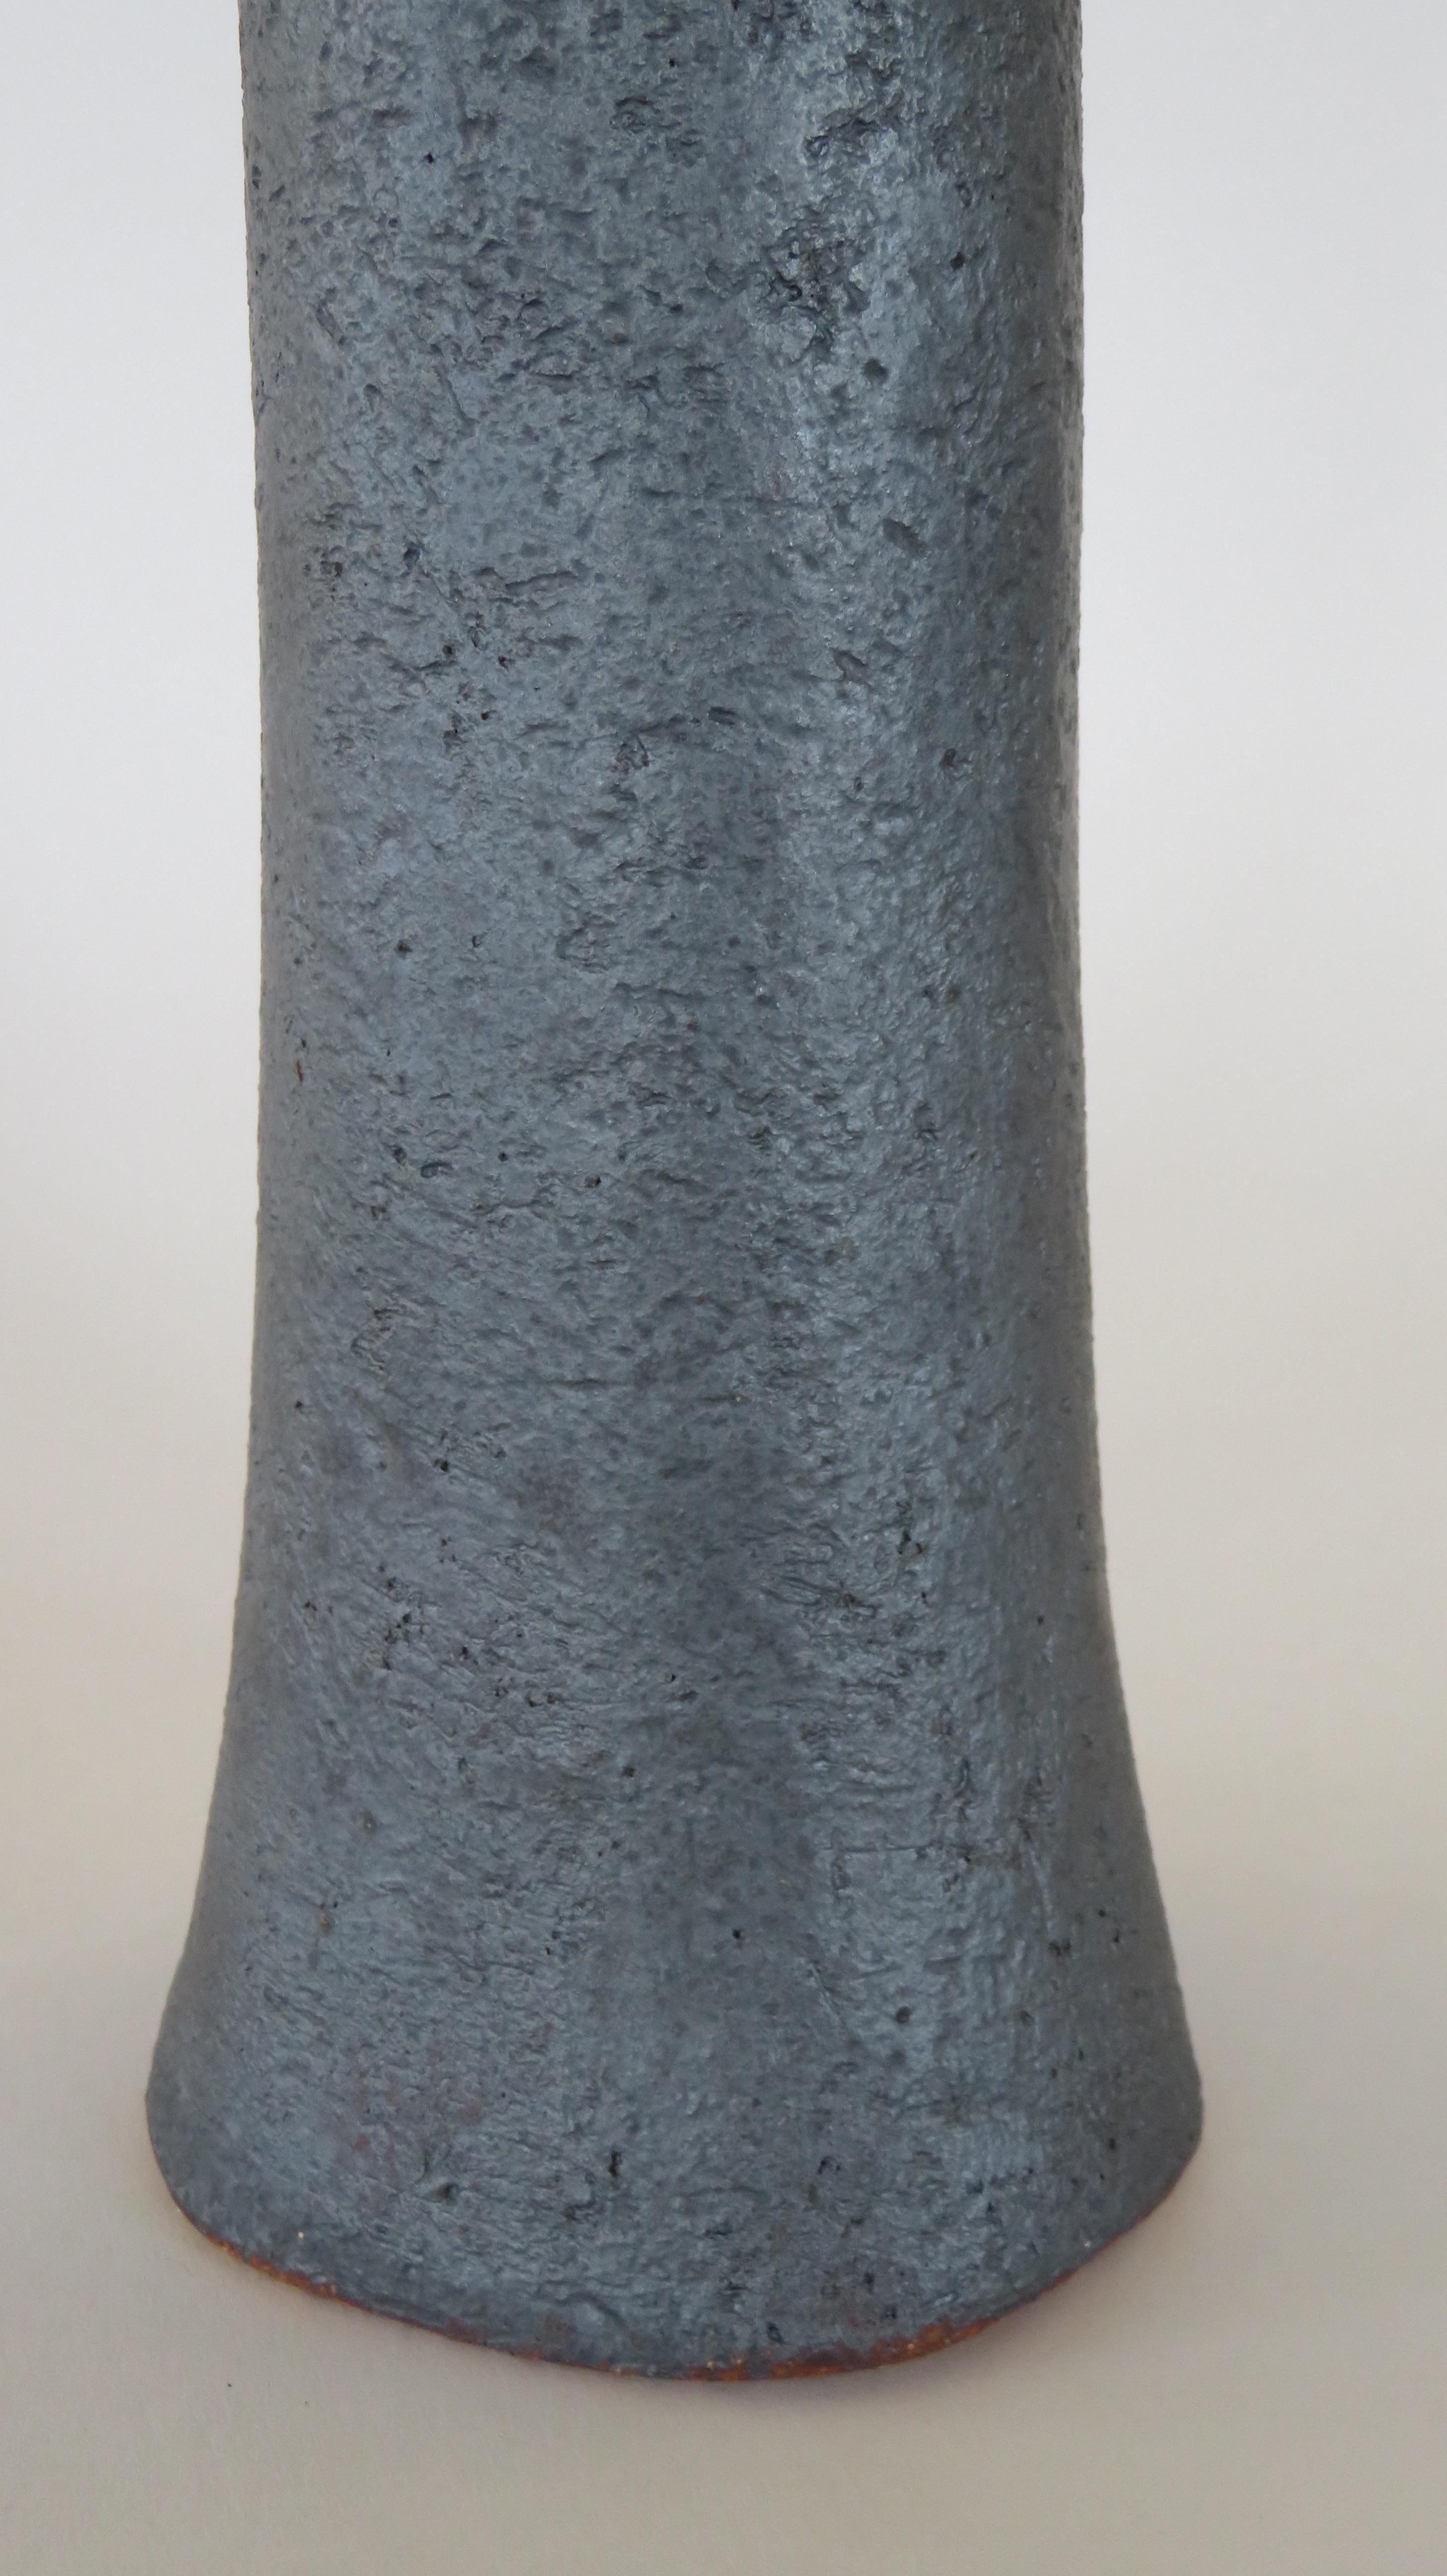 Tall, Tubular Metallic Black Ceramic Stoneware Vase, Hand Built 19 Inches Tall (21. Jahrhundert und zeitgenössisch)